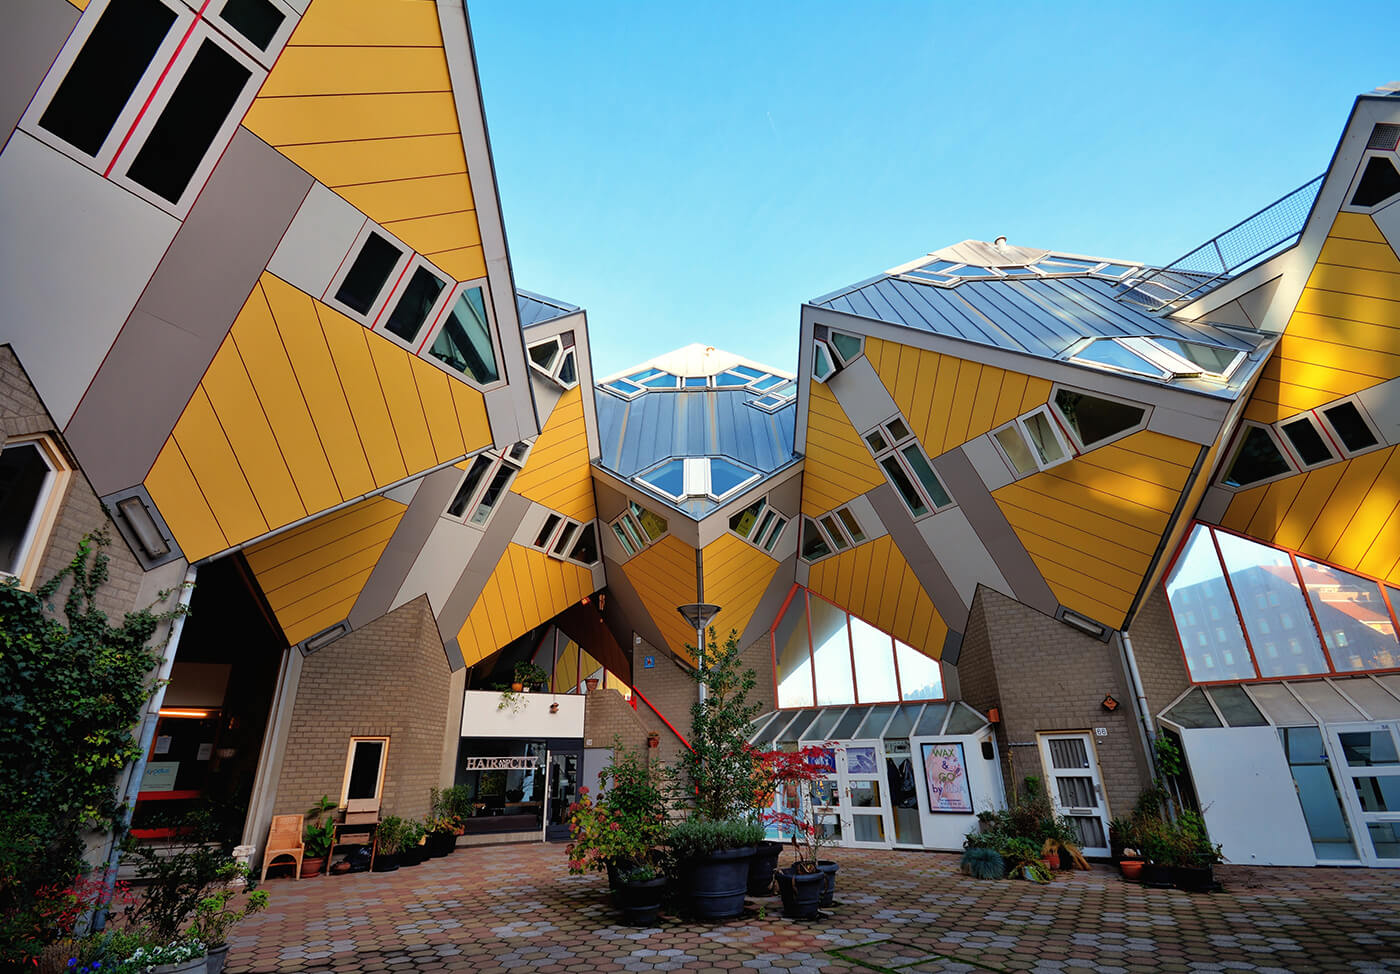 MyBestPlace - Kubuswoningen, the Cube Houses of Rotterdam